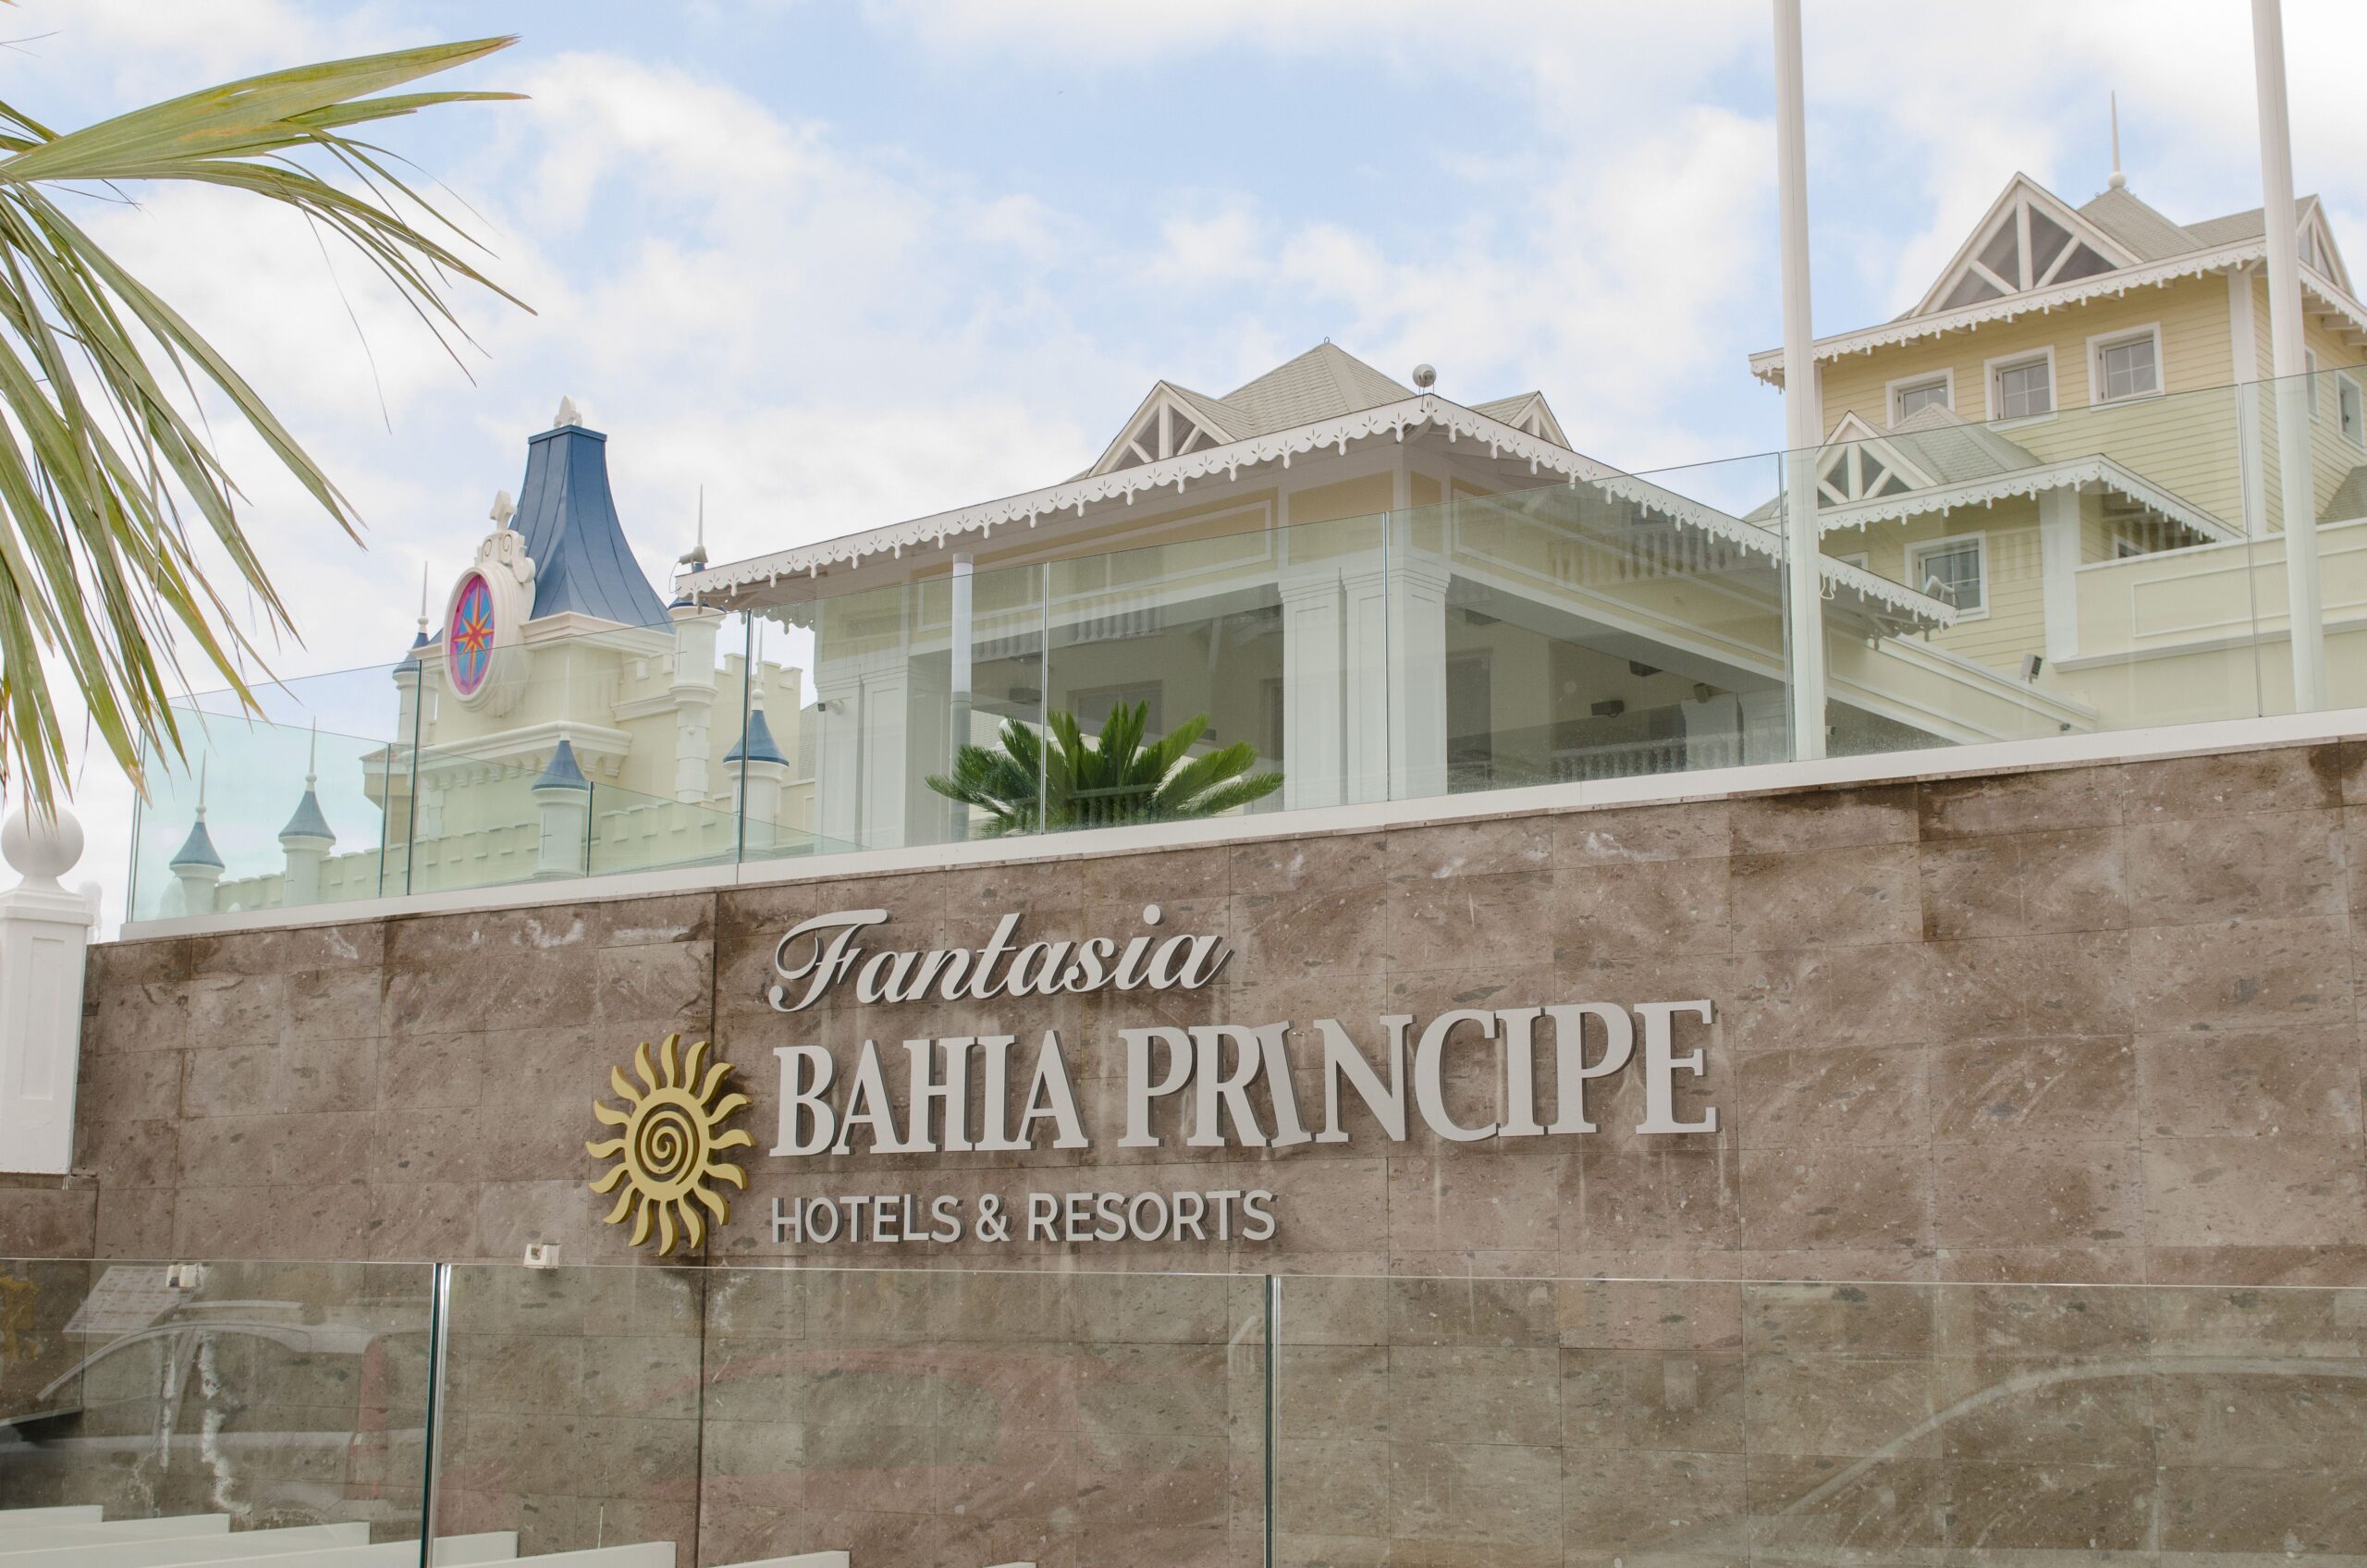 Hotel Bahía Príncipe Fantasía. Proyecto de Dressler Aluminio